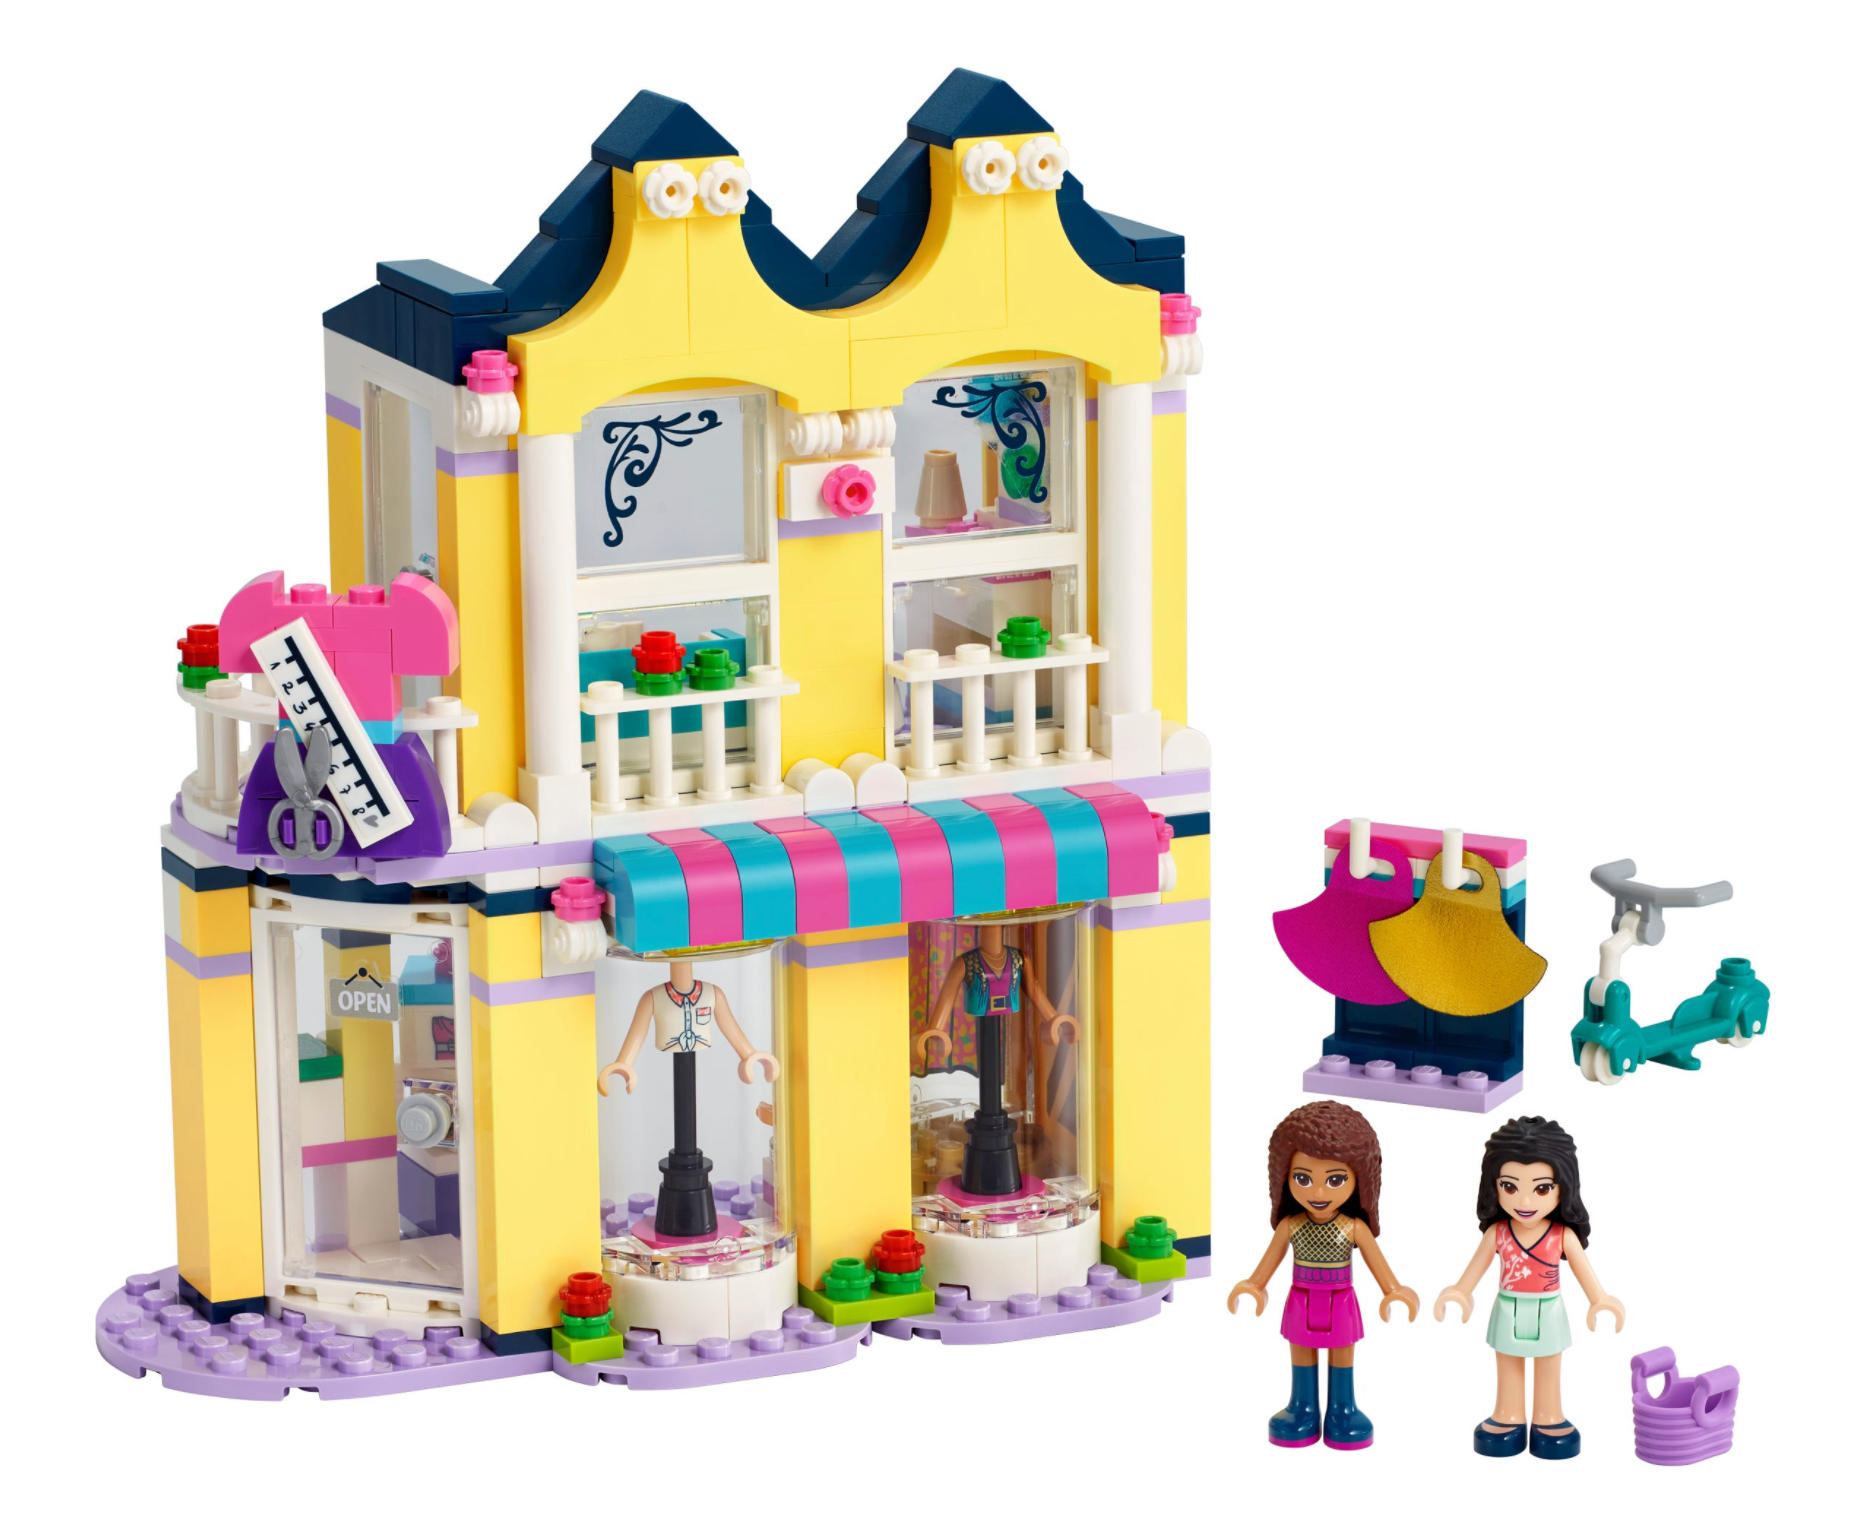 LEGO: Friends - Emma's Fashion Shop